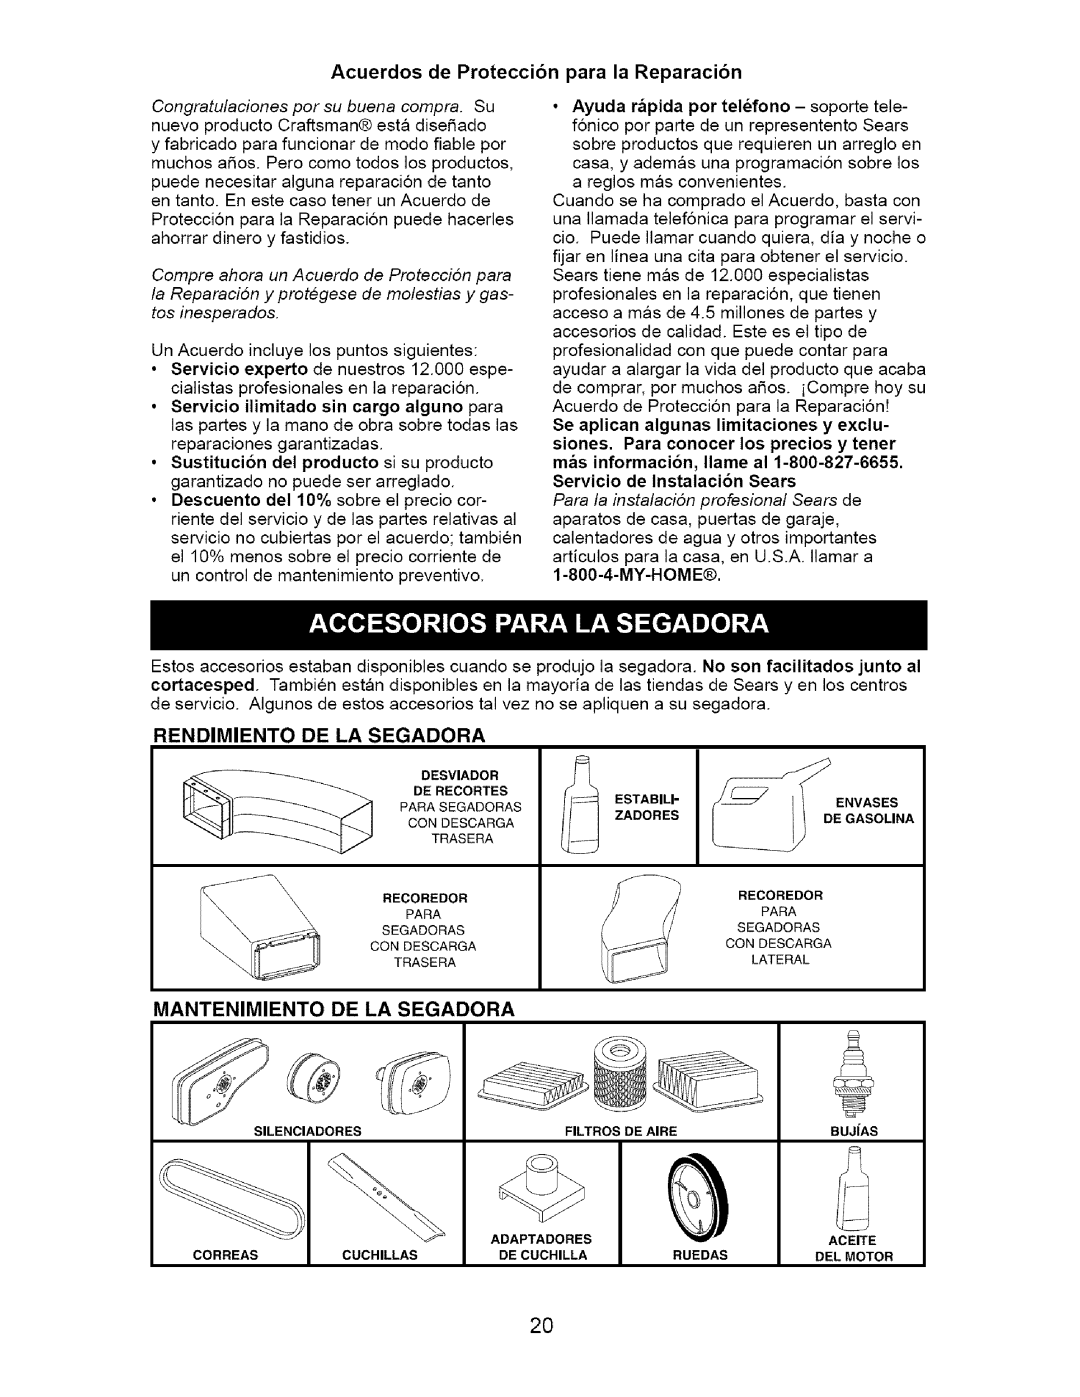 Craftsman 917.385124 Acuerdos de Protecci6n para la Reparaci6n, Servicio de Instalacion Sears, Rendimiento De La Segadora 